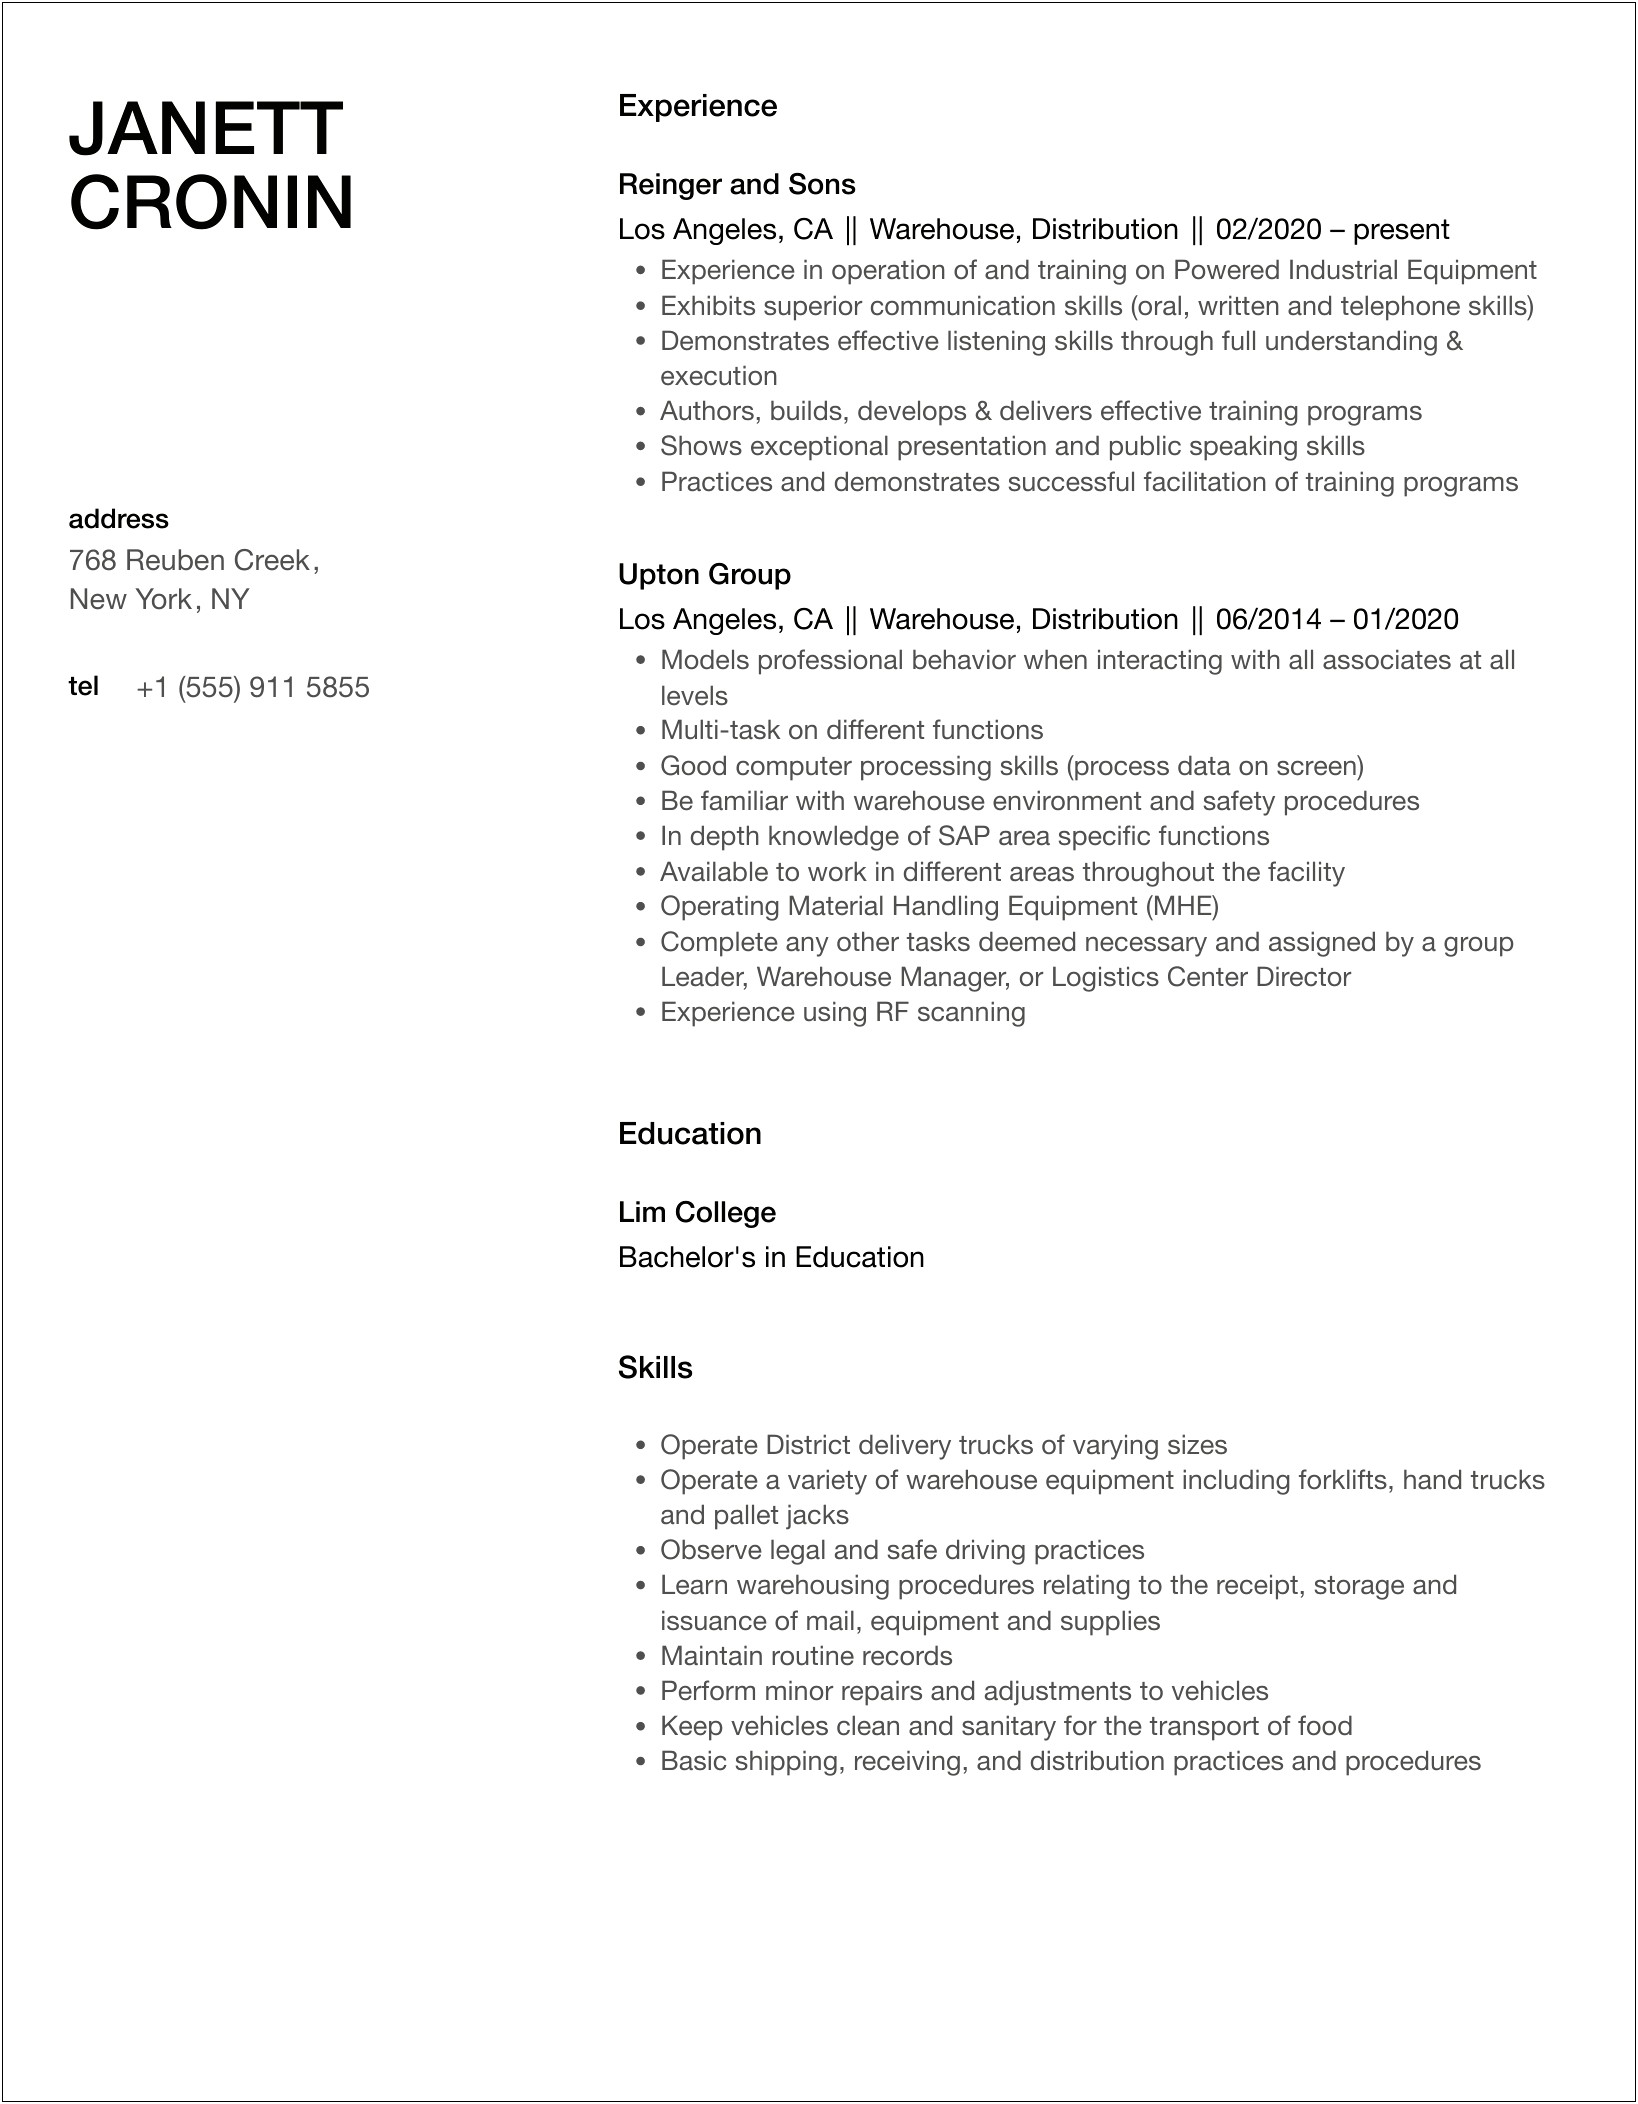 Petco Distribution Center Job Description For Resume